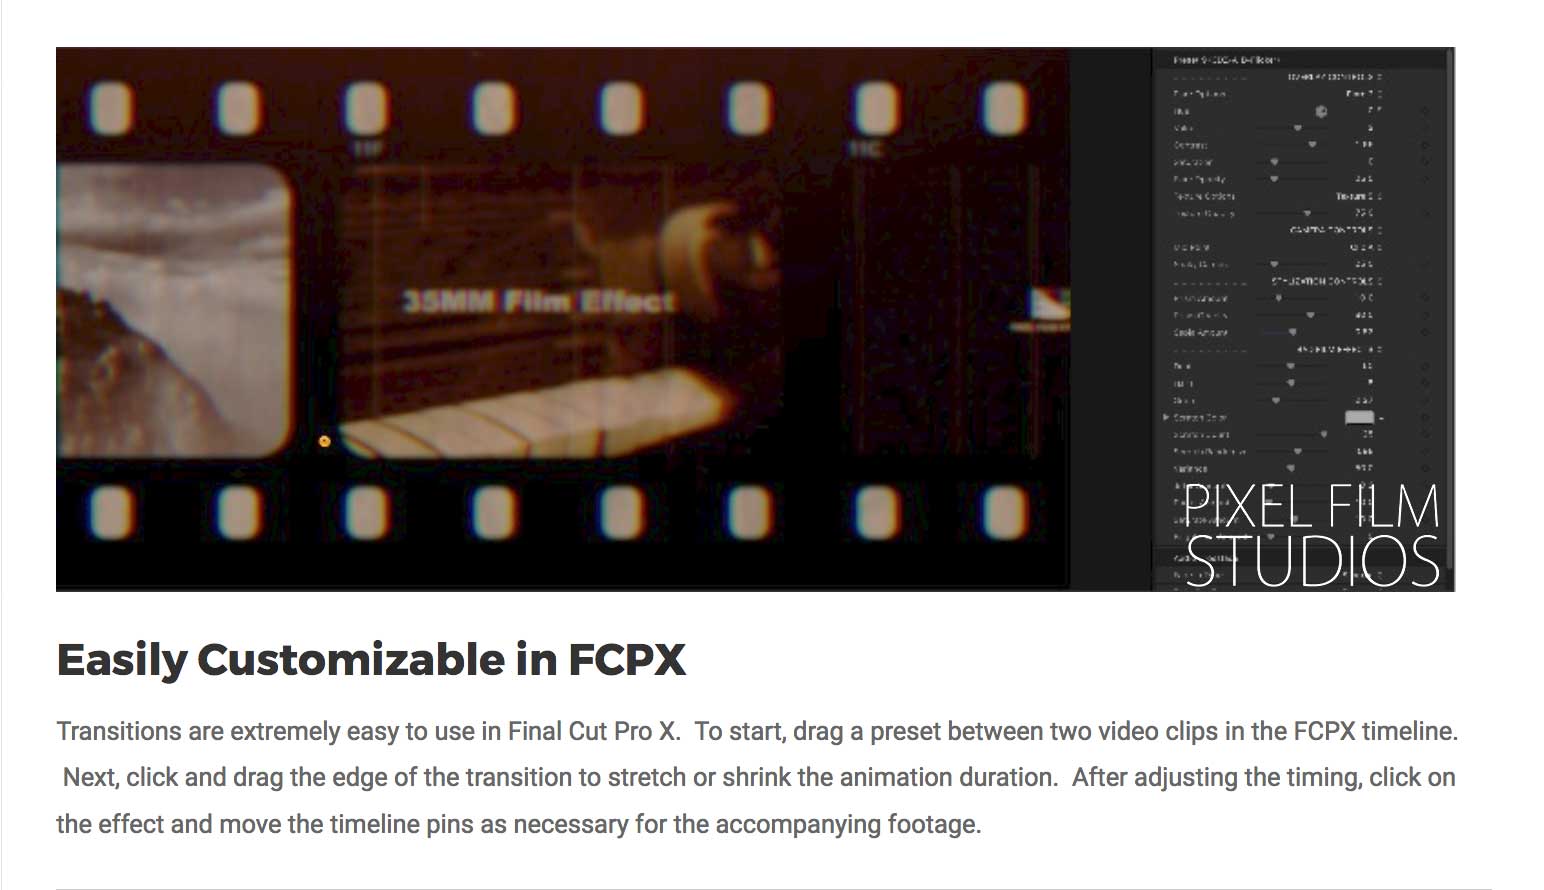 TransFilm Volume 2 - Pixel Film Studios Plugins - FCPX Transitions